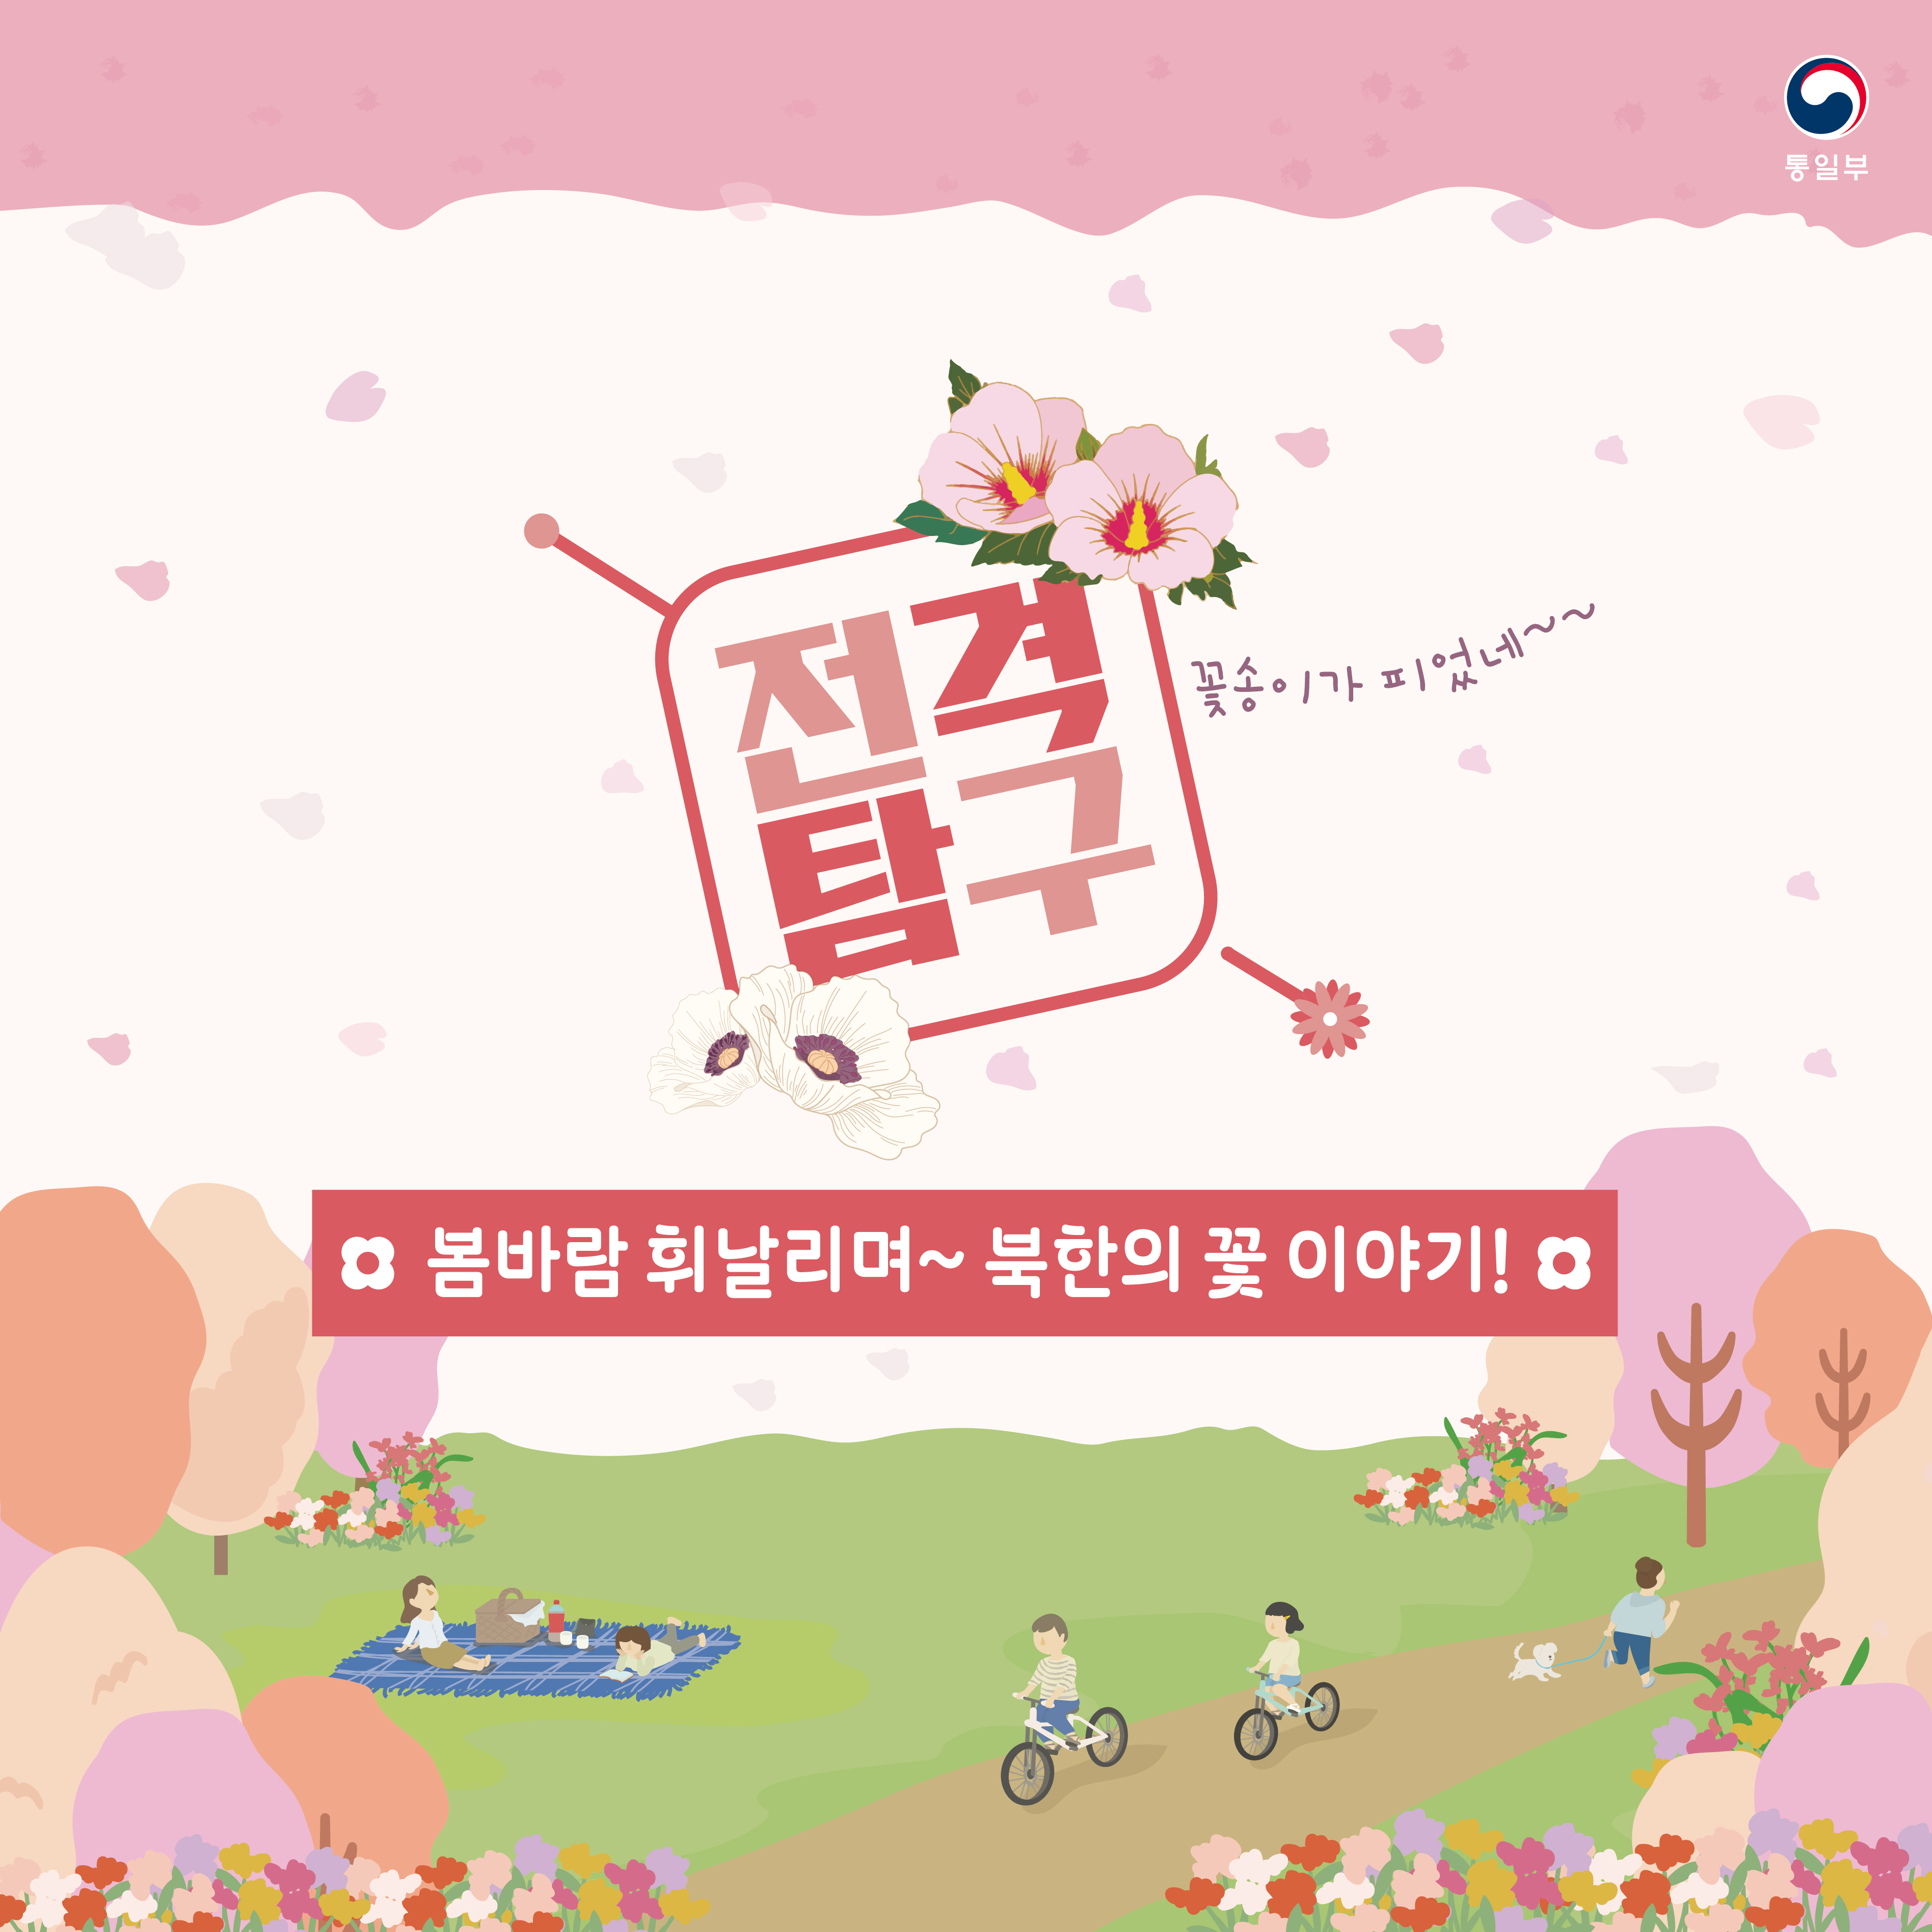 전격탐구
봄바람 휘날리며~ 북한의 꽃 이야기!